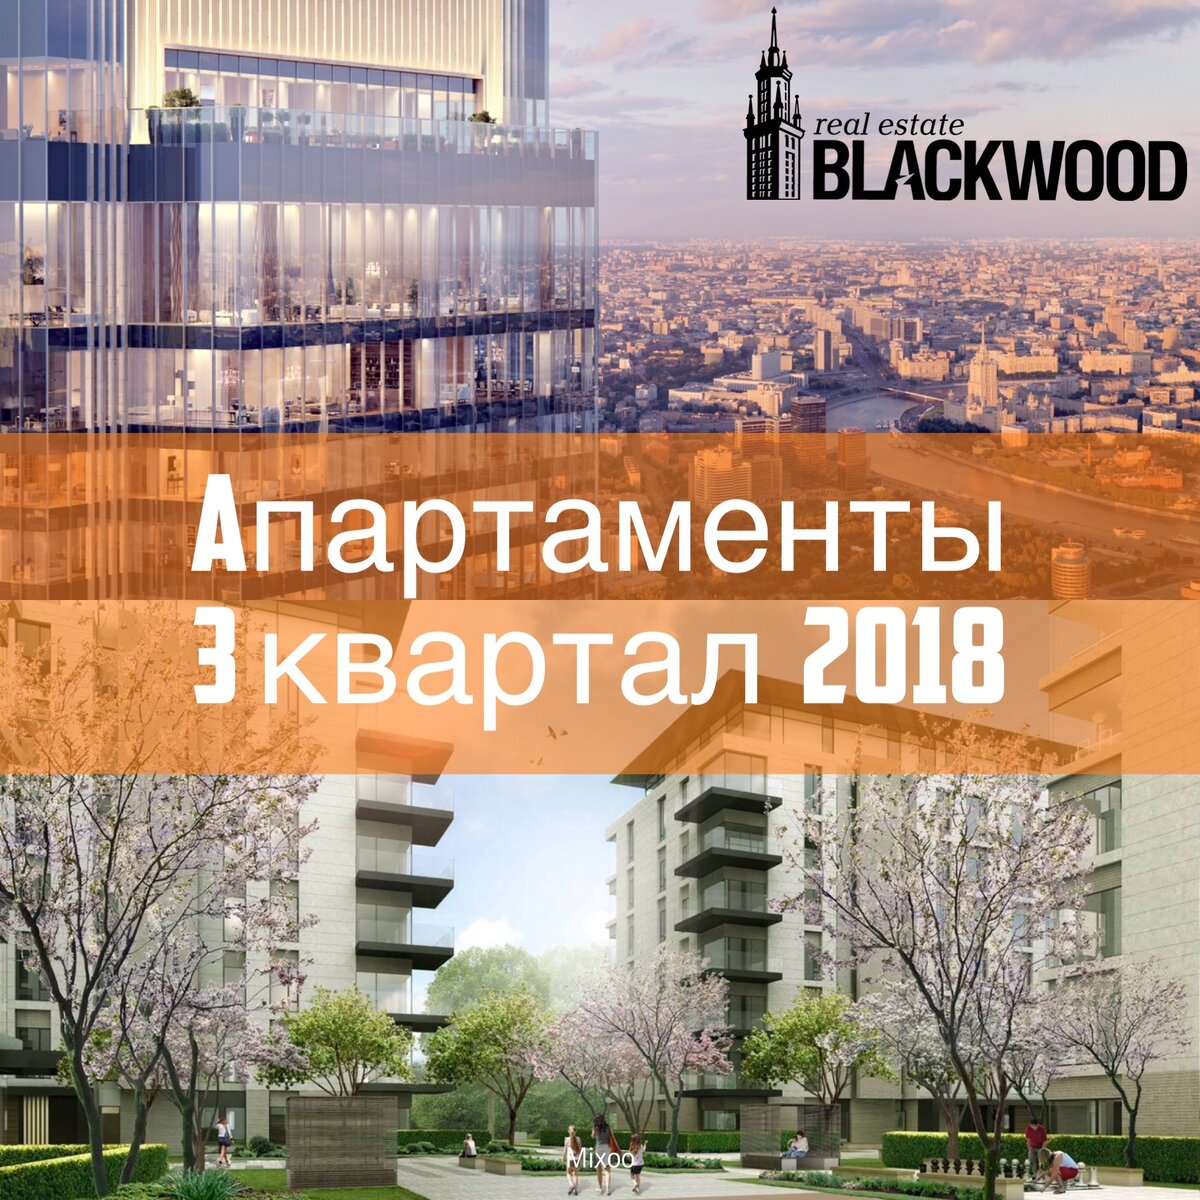 Формат апартаментов набирает популярность в высшем ценовом сегменте жилого рынка Москвы.